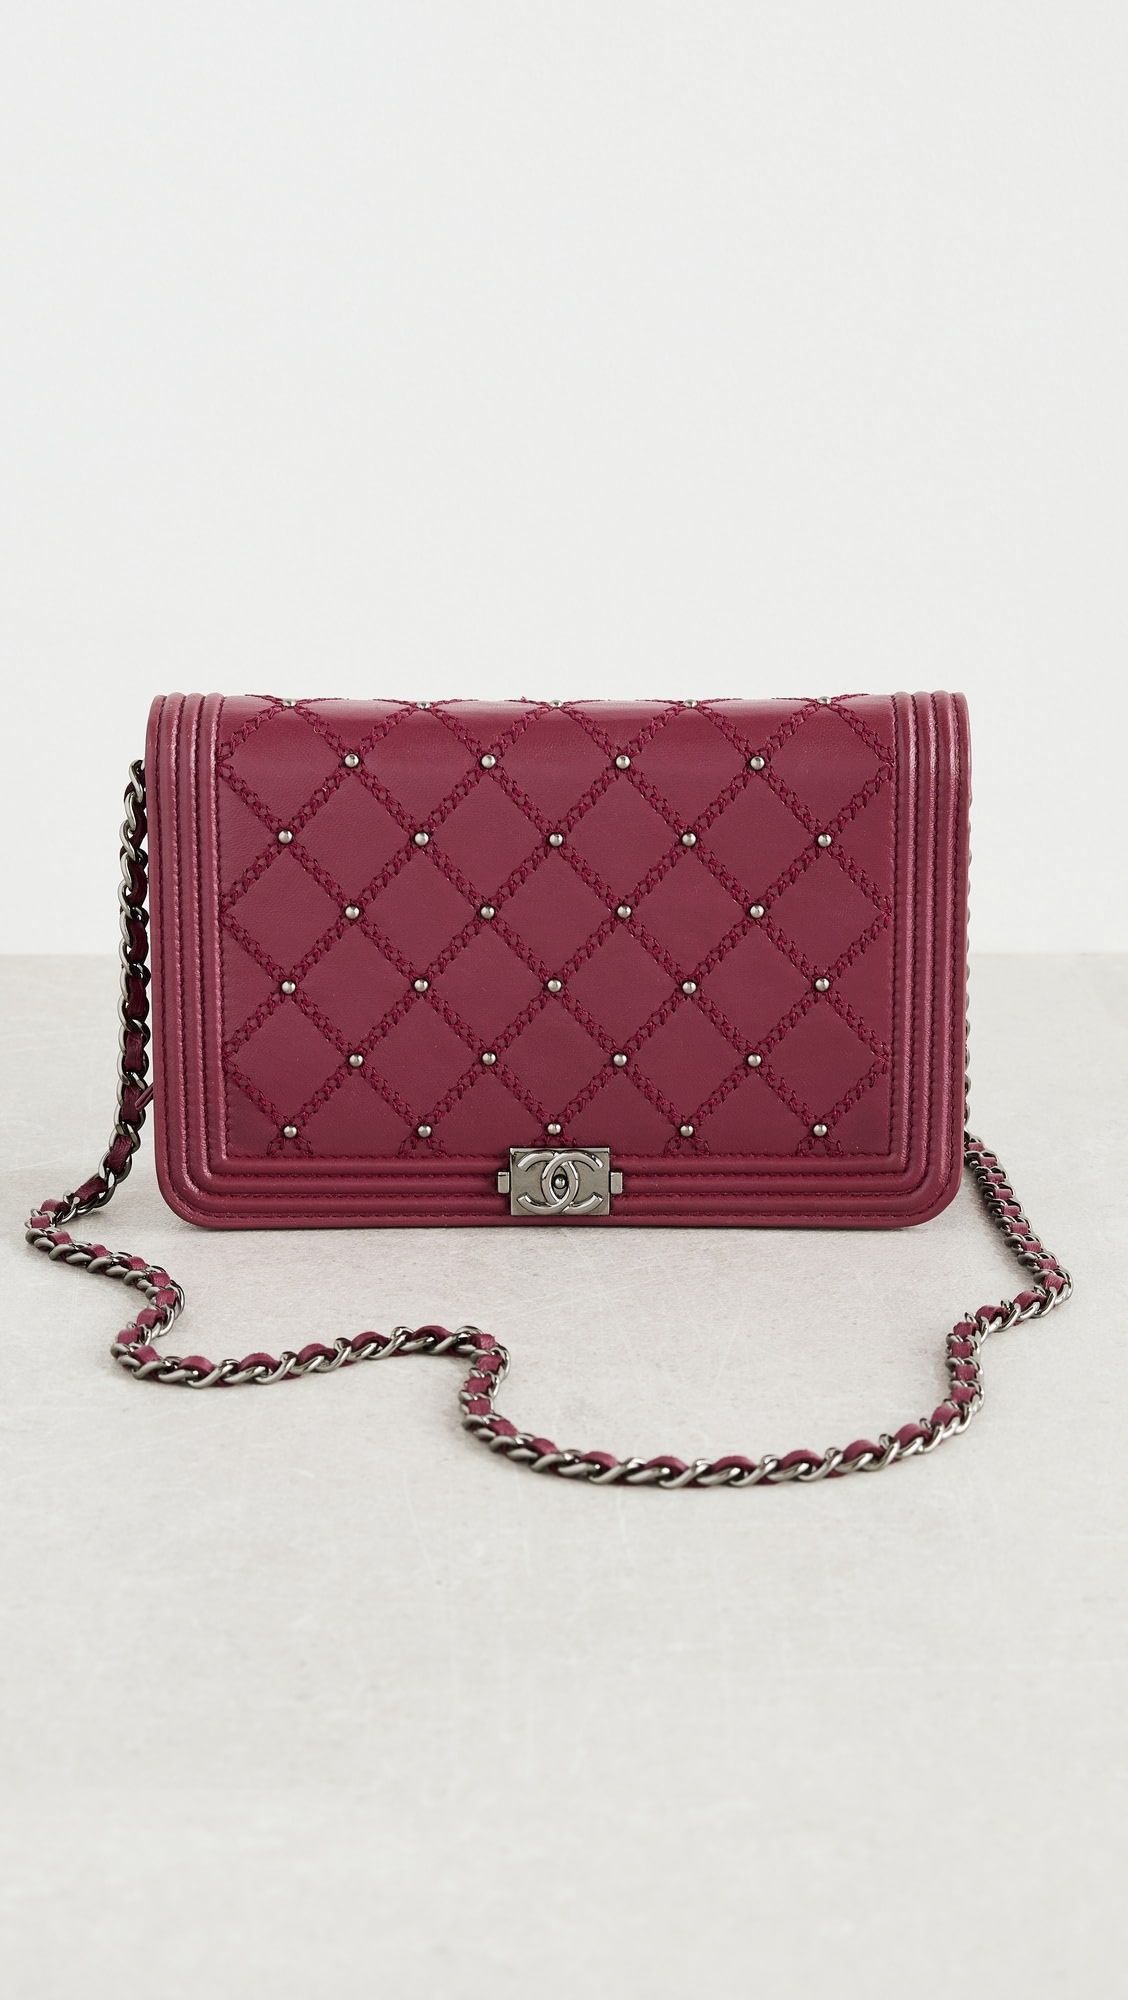 Chanel Burgundy Boy Wallet On Chain | Shopbop